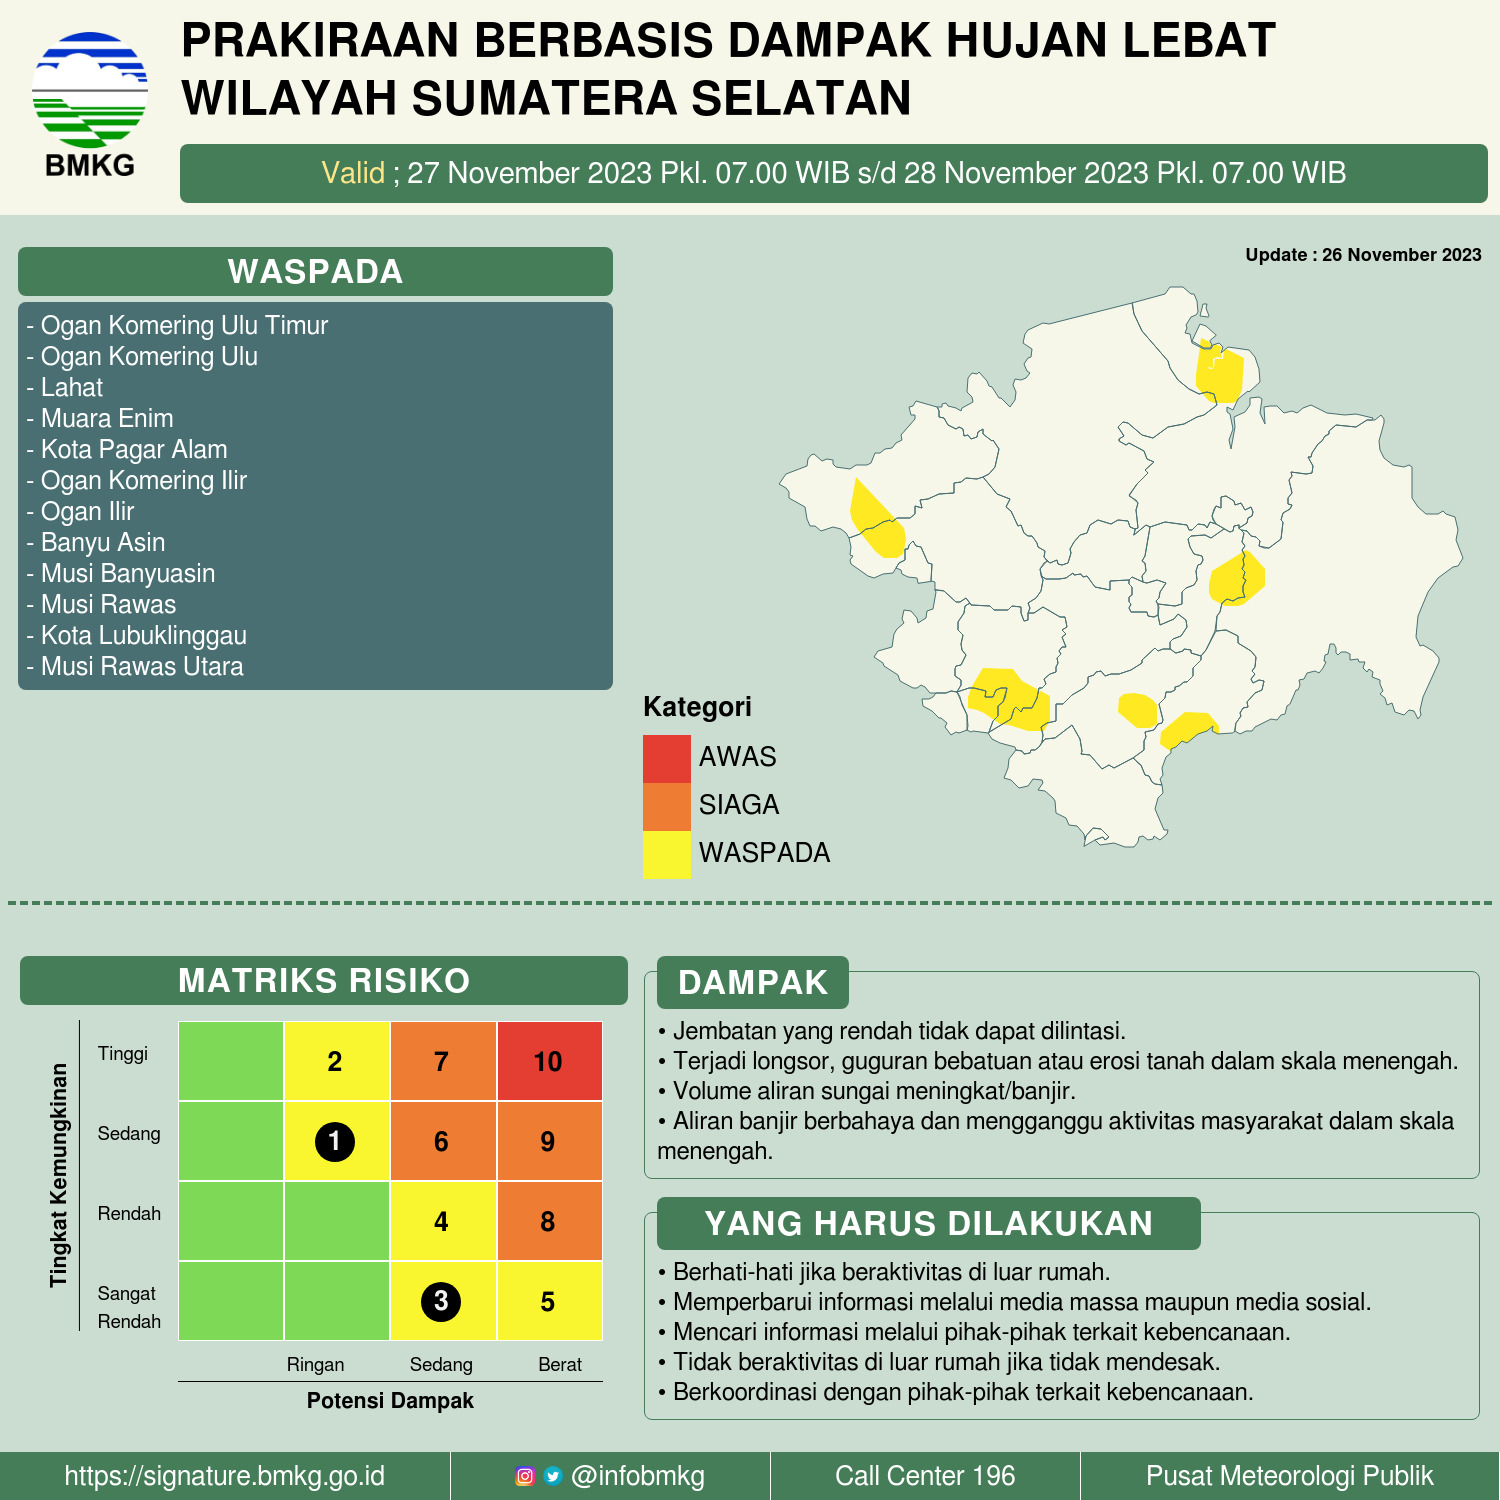  Prakiraan Cuaca Berbasis Dampak Hujan Lebat di Wilayah Sumatera Selatan (Level Waspada), 27 November 2023